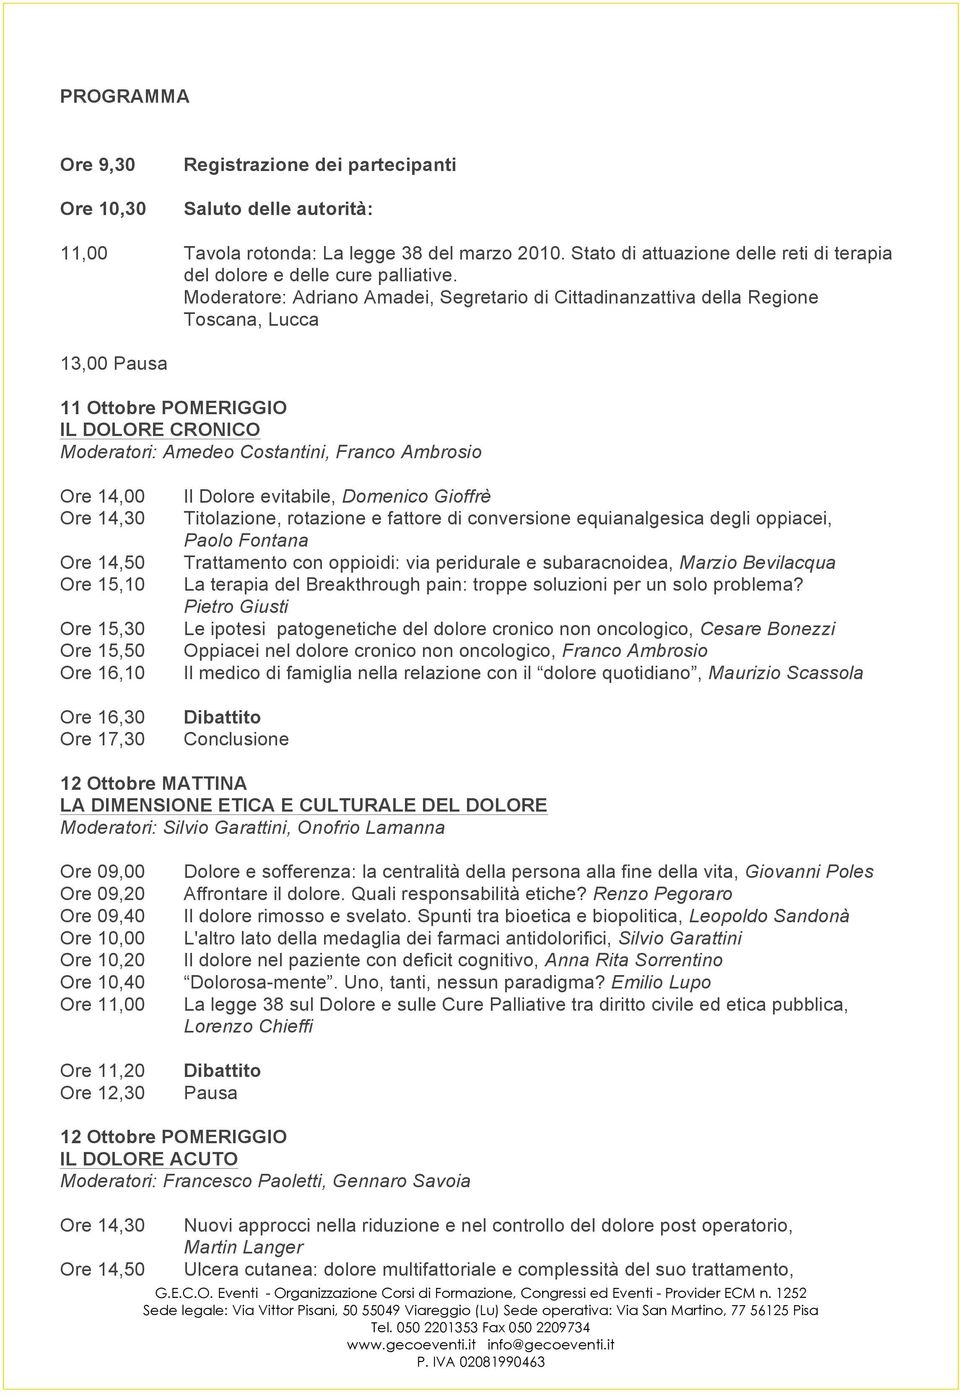 Moderatore: Adriano Amadei, Segretario di Cittadinanzattiva della Regione Toscana, Lucca 13,00 Pausa 11 Ottobre POMERIGGIO IL DOLORE CRONICO Moderatori: Amedeo Costantini, Franco Ambrosio Ore 14,00